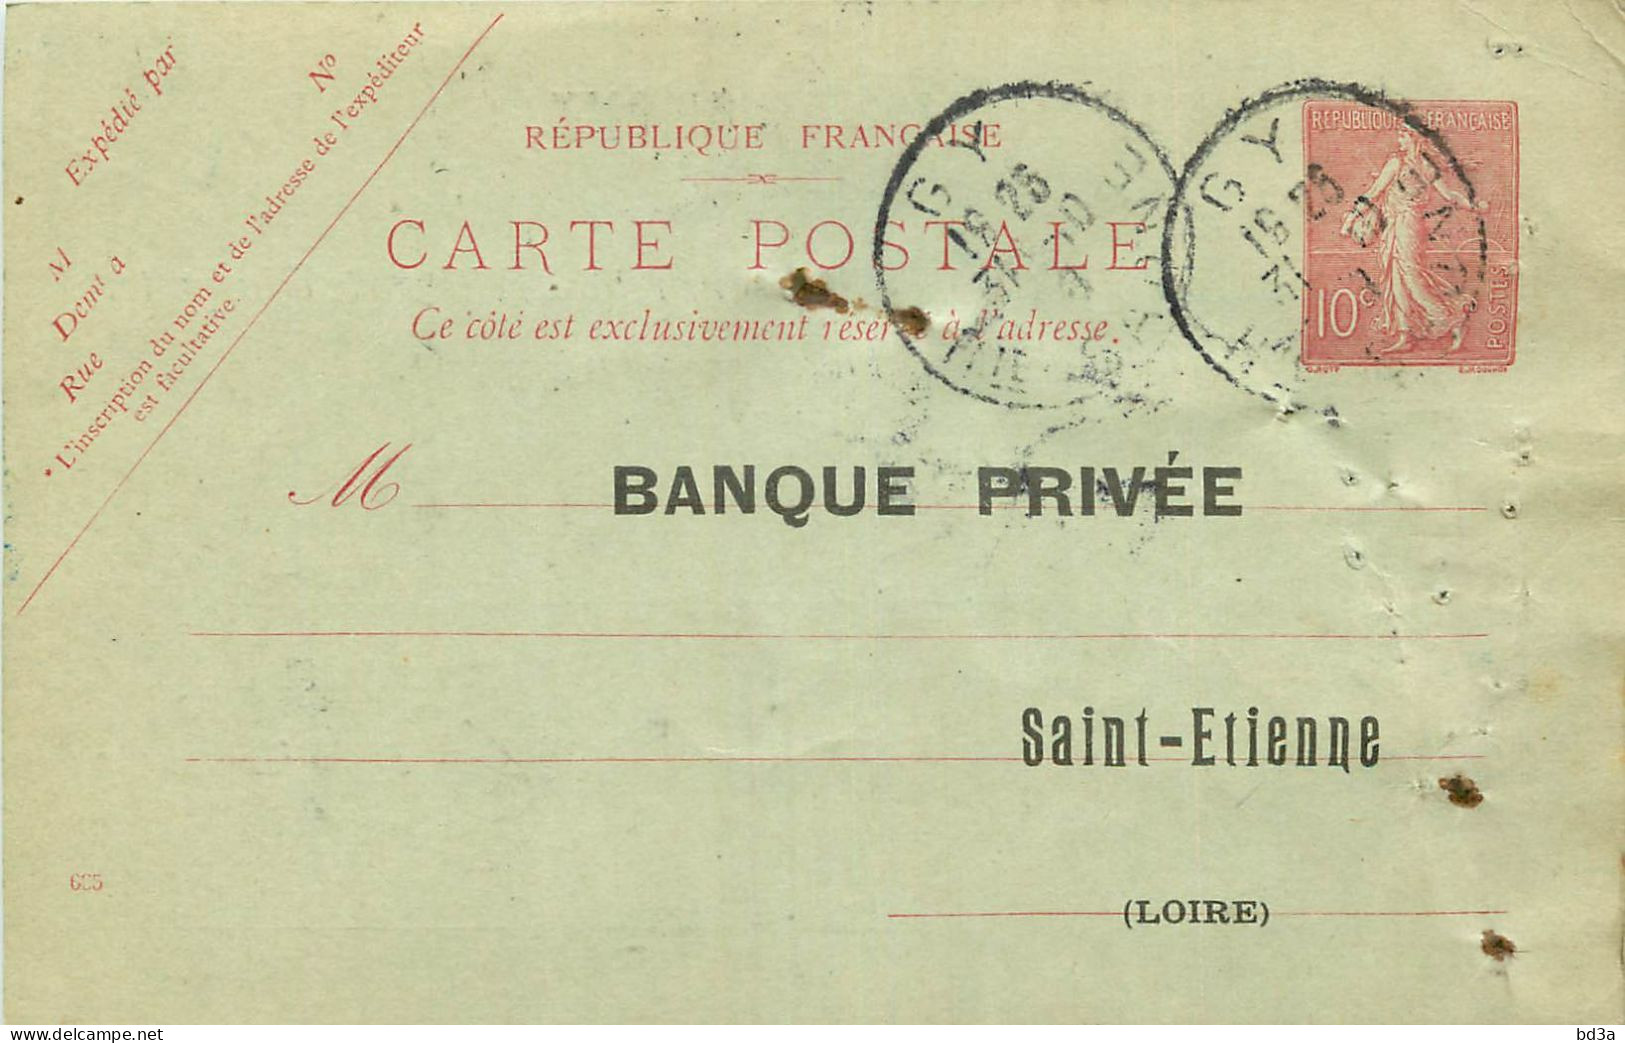 ENTIERS POSTAUX - N° 129 CPI - GY - HTE SAONE - 1908 - BANQUE PRIVEE  SAINT ETIENNE - AVIS D'ENCAISSEMENT - Overprinter Postcards (before 1995)